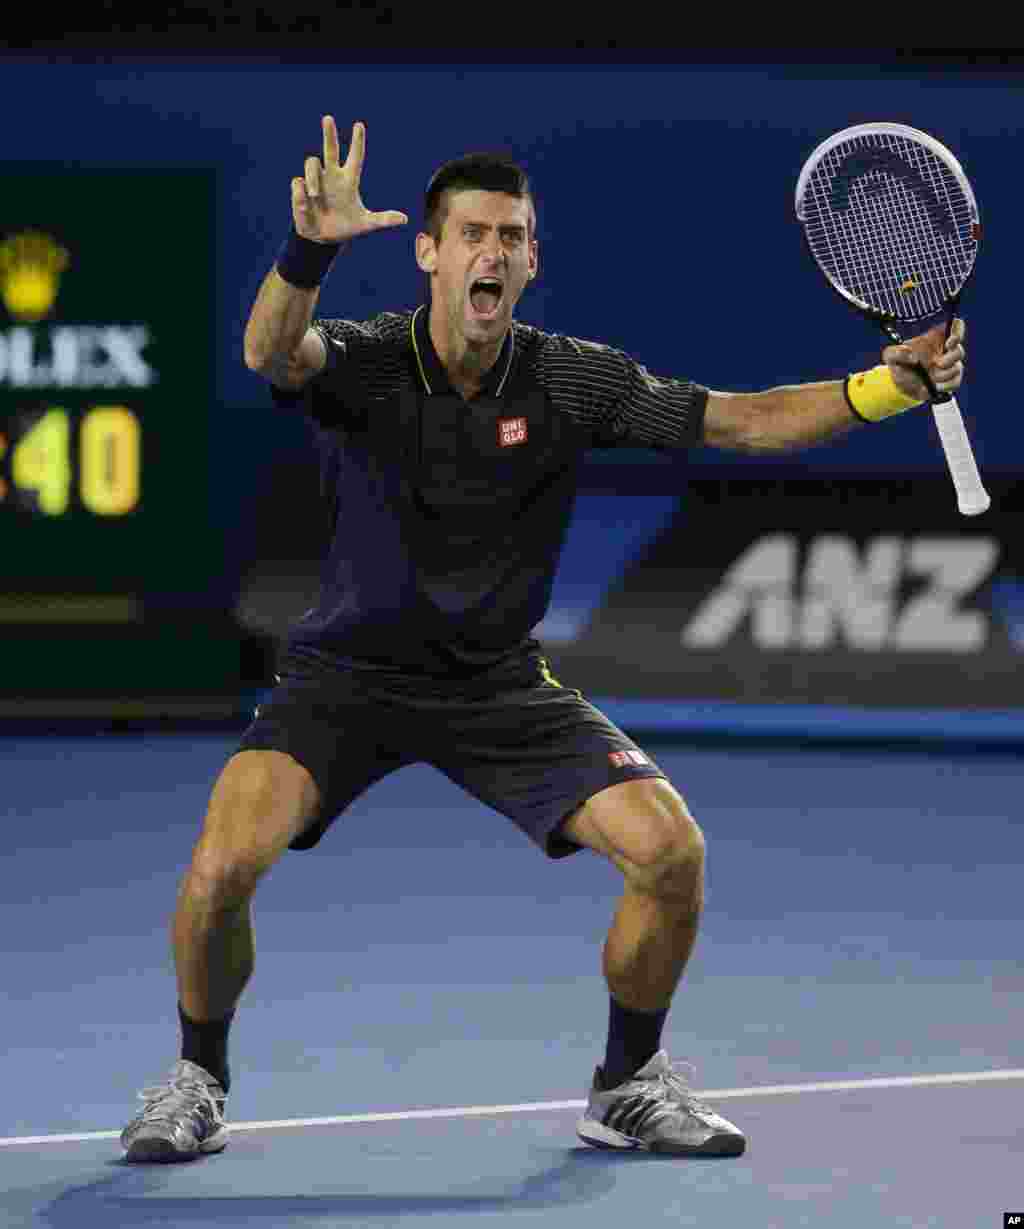 Treća uzastopna titula u Melburnu, radost čoveka koji je danas u&scaron;ao u tenisku istoriju